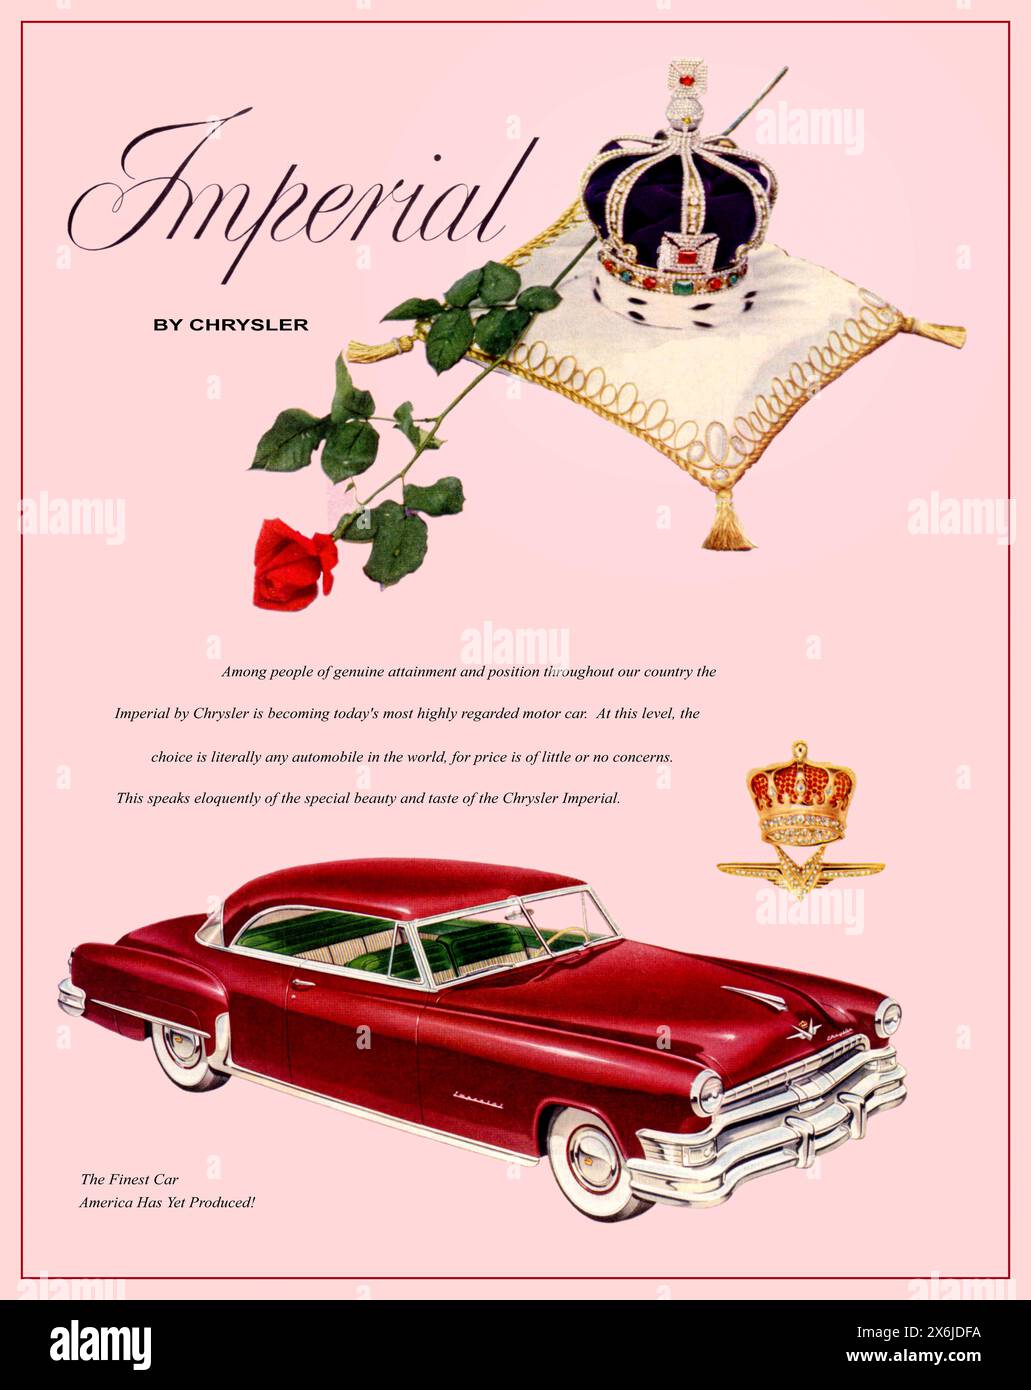 1950er Jahre Chrysler Imperial 2 dr, Coupé-Werbung mit einer königlichen Krone auf einem Plüschkissen, die an die britische Krönung von Queen Elizabeth II. Im Jahr 1953 erinnert. Chrysler Corporation USA America 1952 Stockfoto